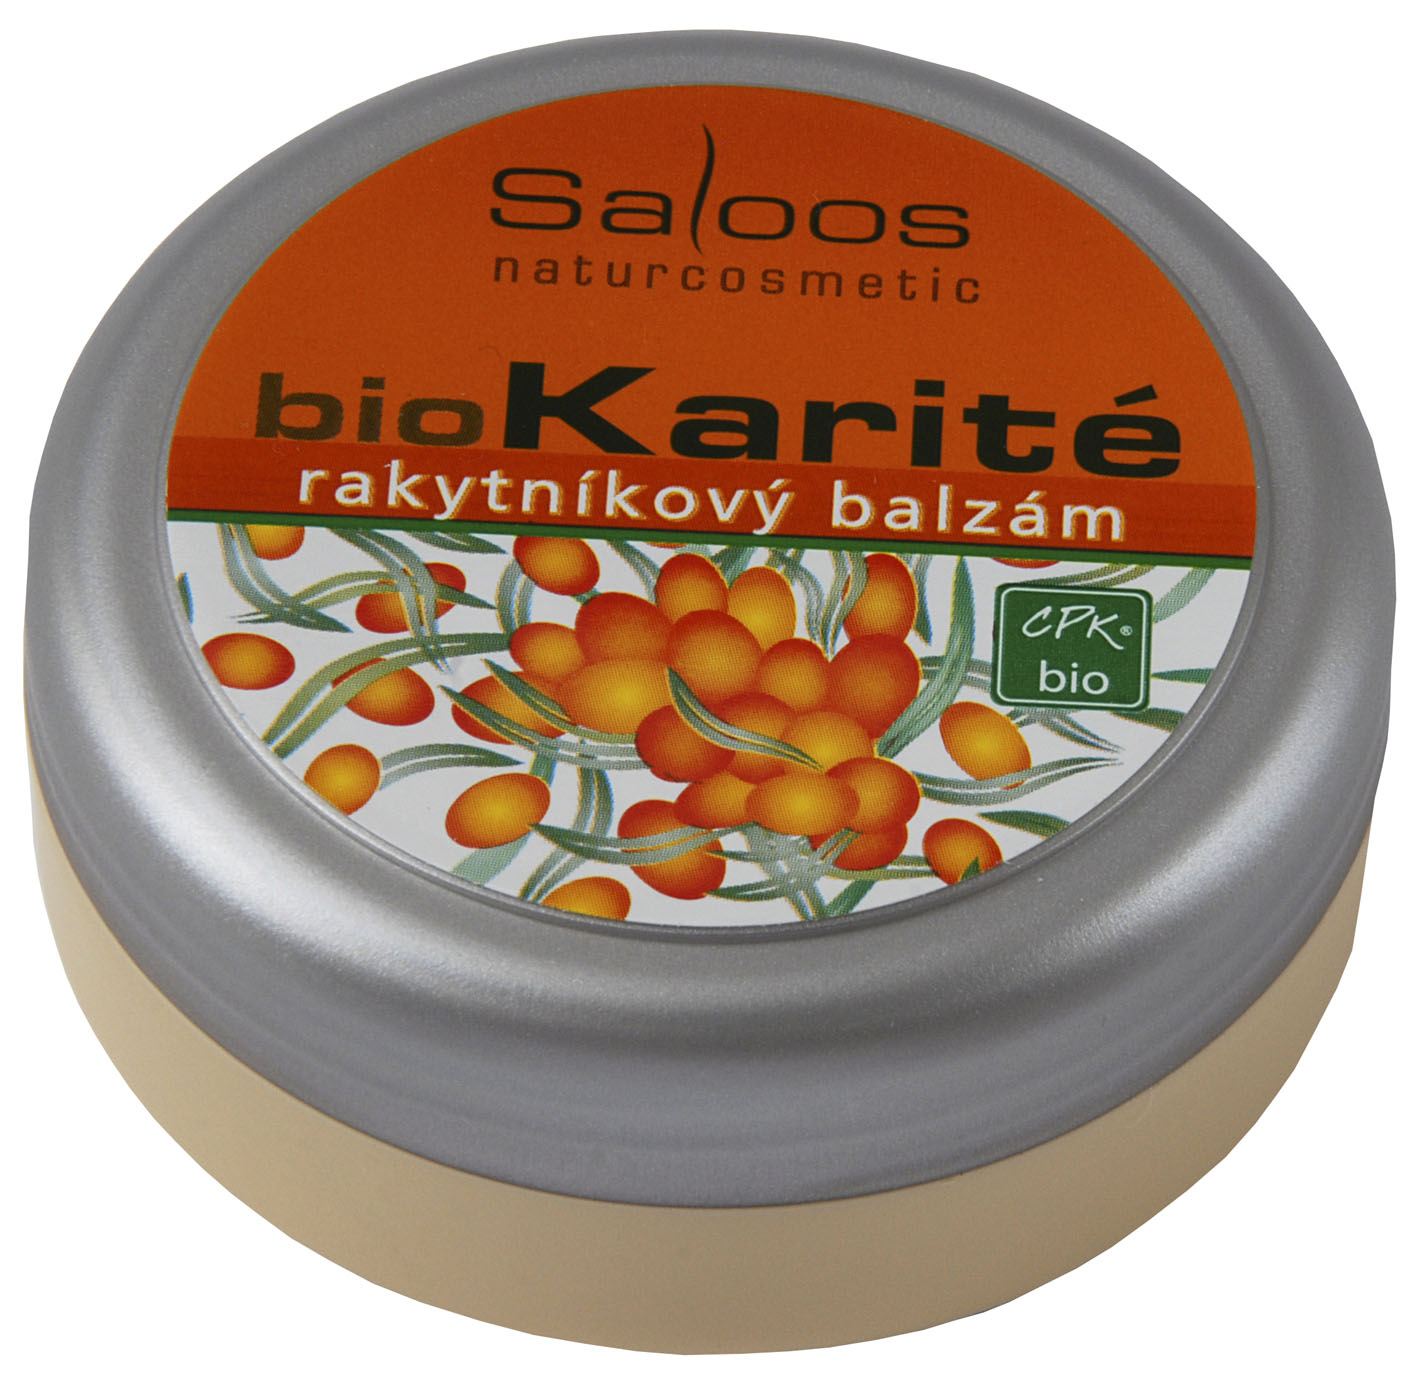 Bio Karité Rakytníkový balzám 250 ml - Saloos